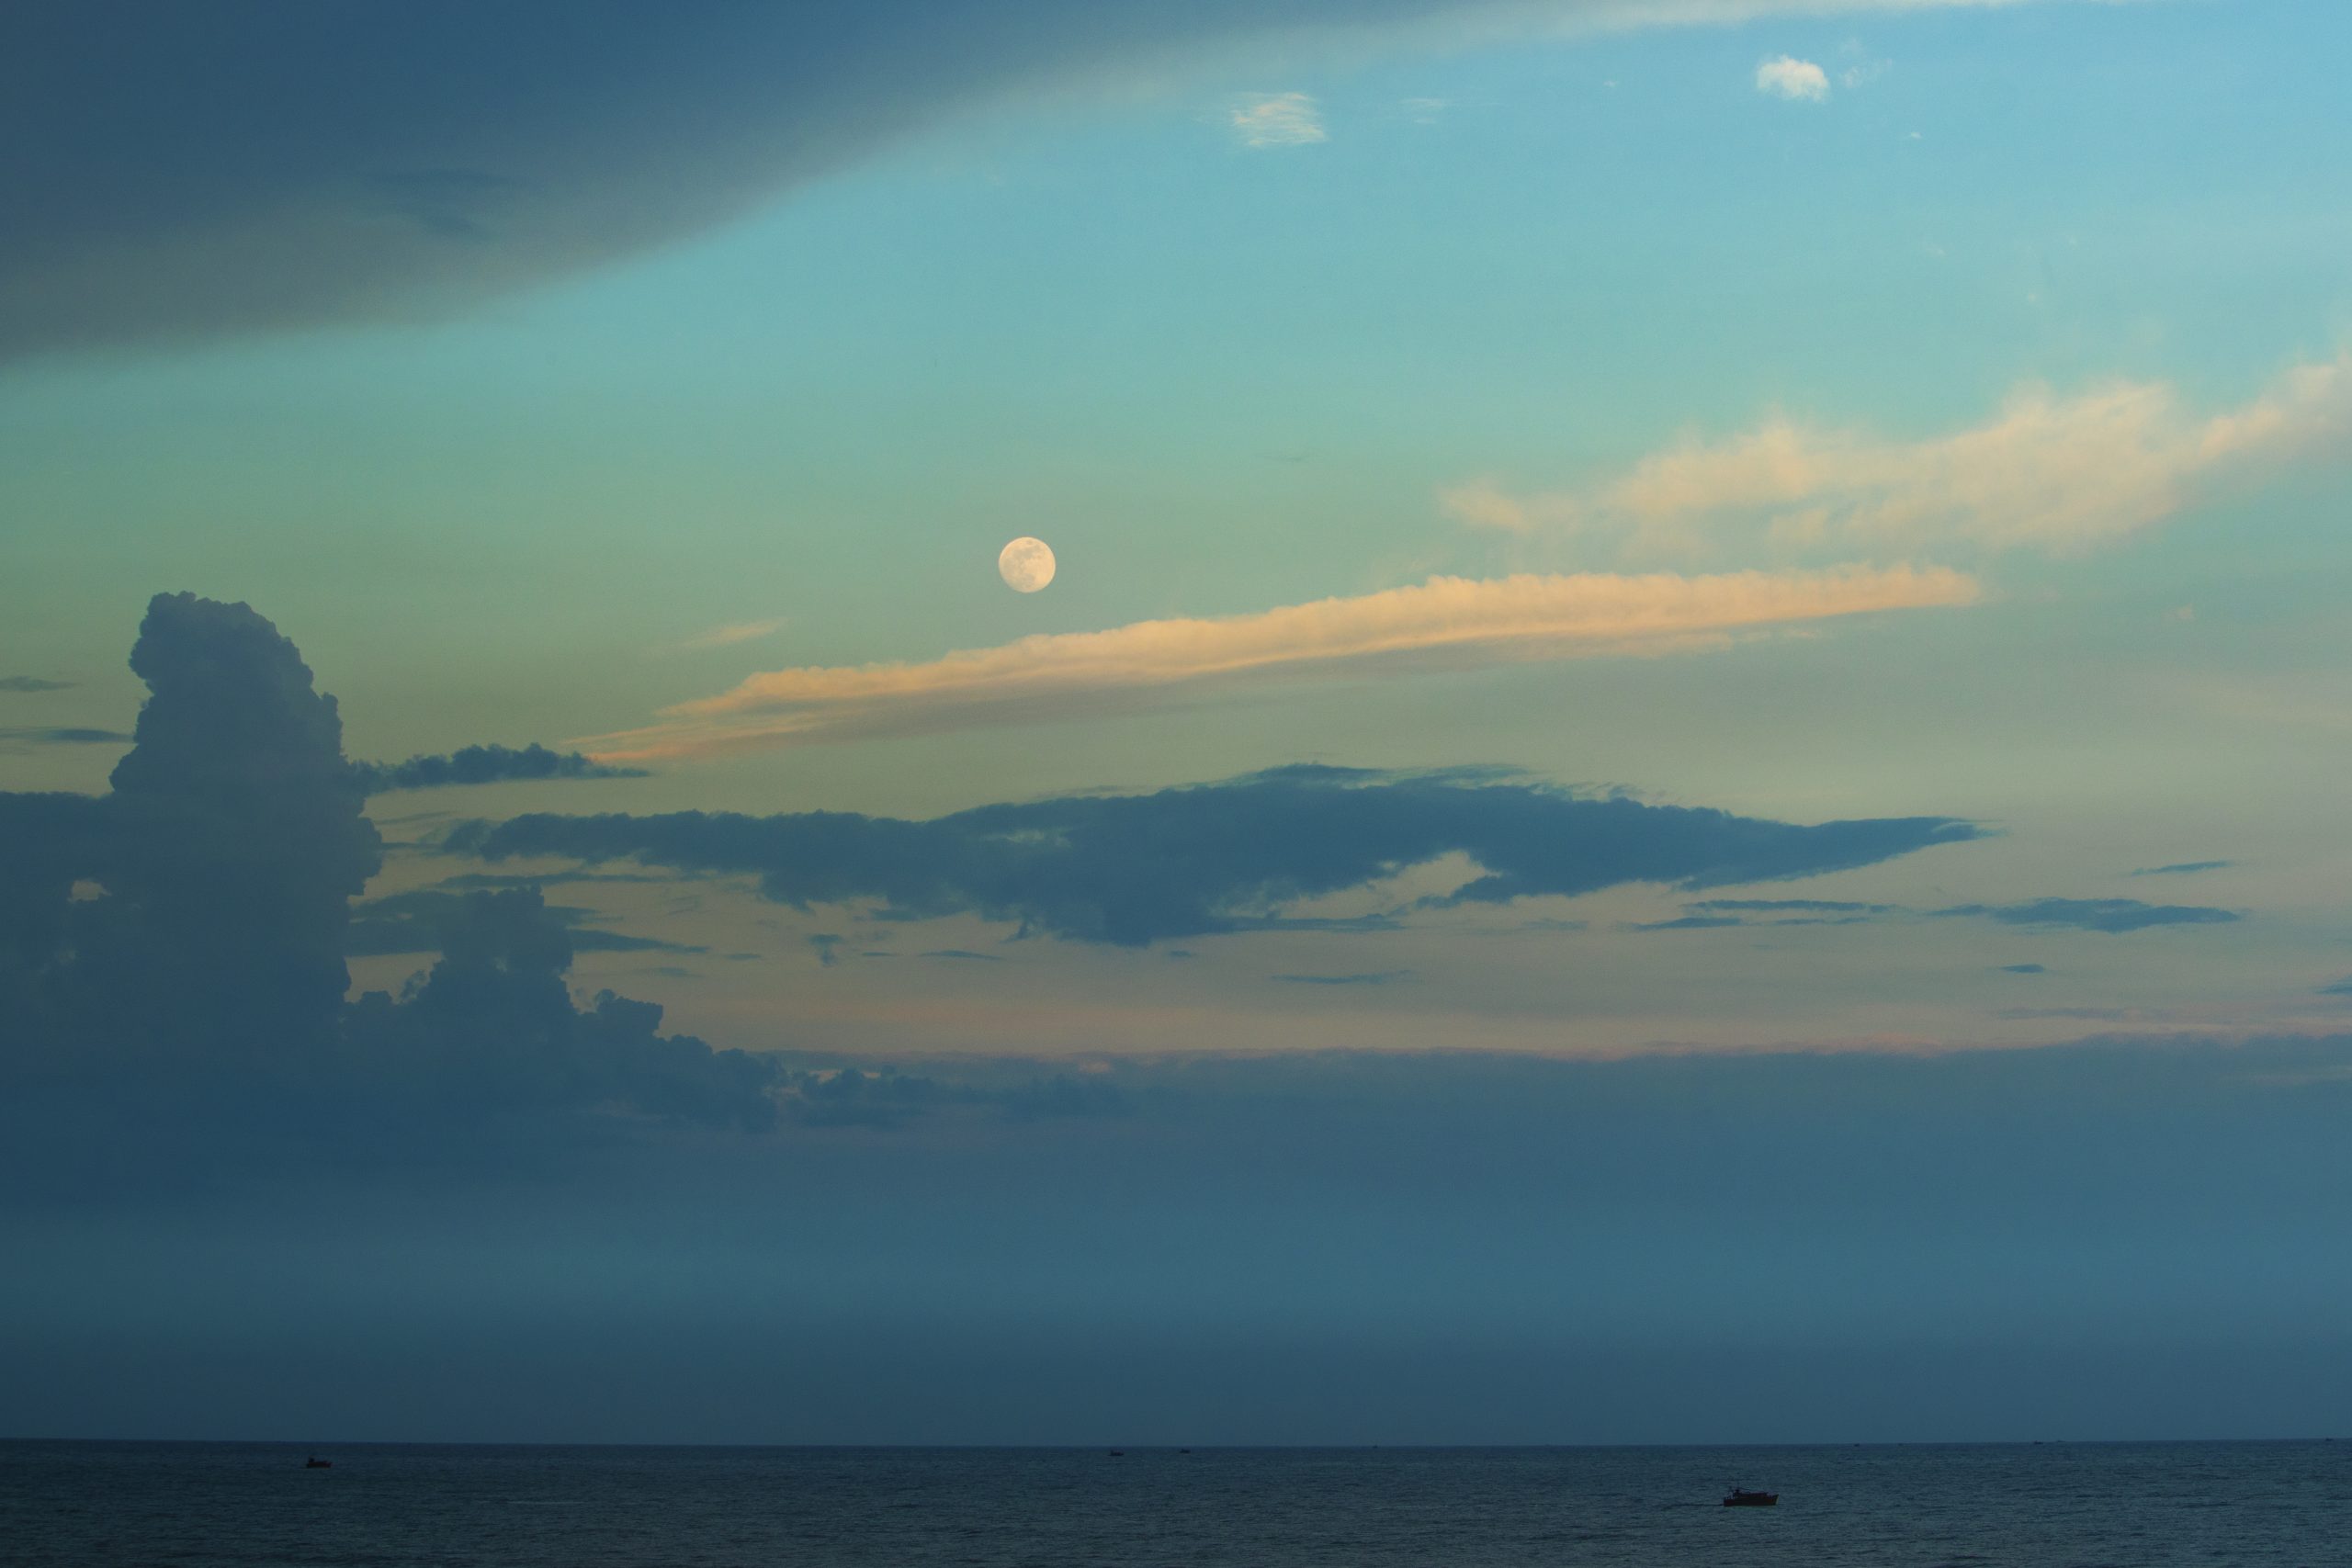 Moonrise over the sea